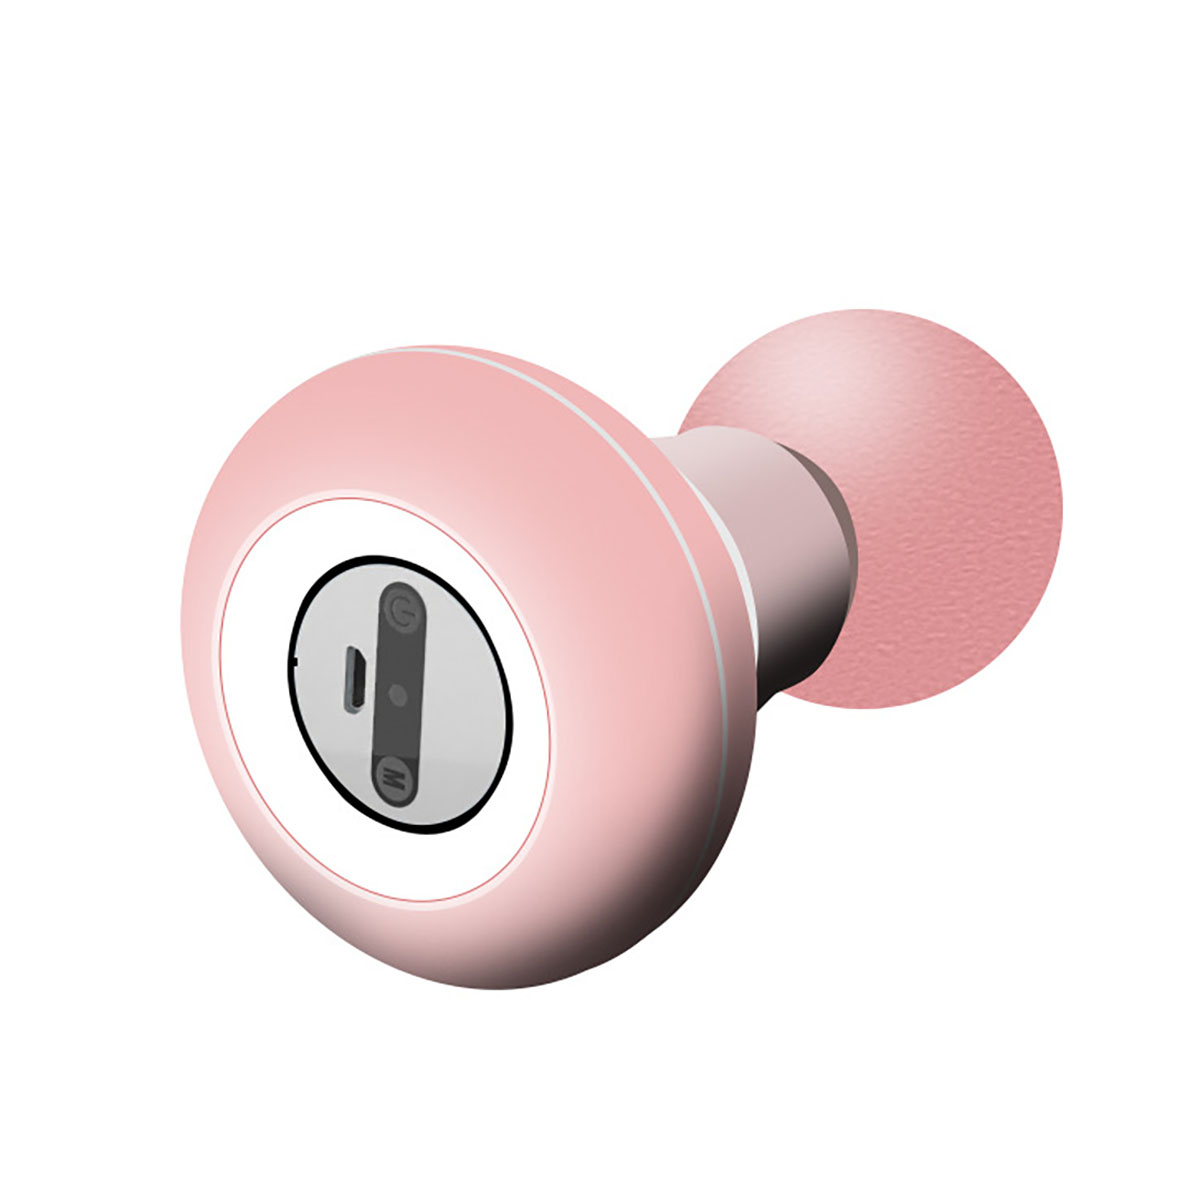 6-stufige LACAMAX Massagegerät Pink mini Faszienmesser Bequemer Vibration, Schaltung Starke -